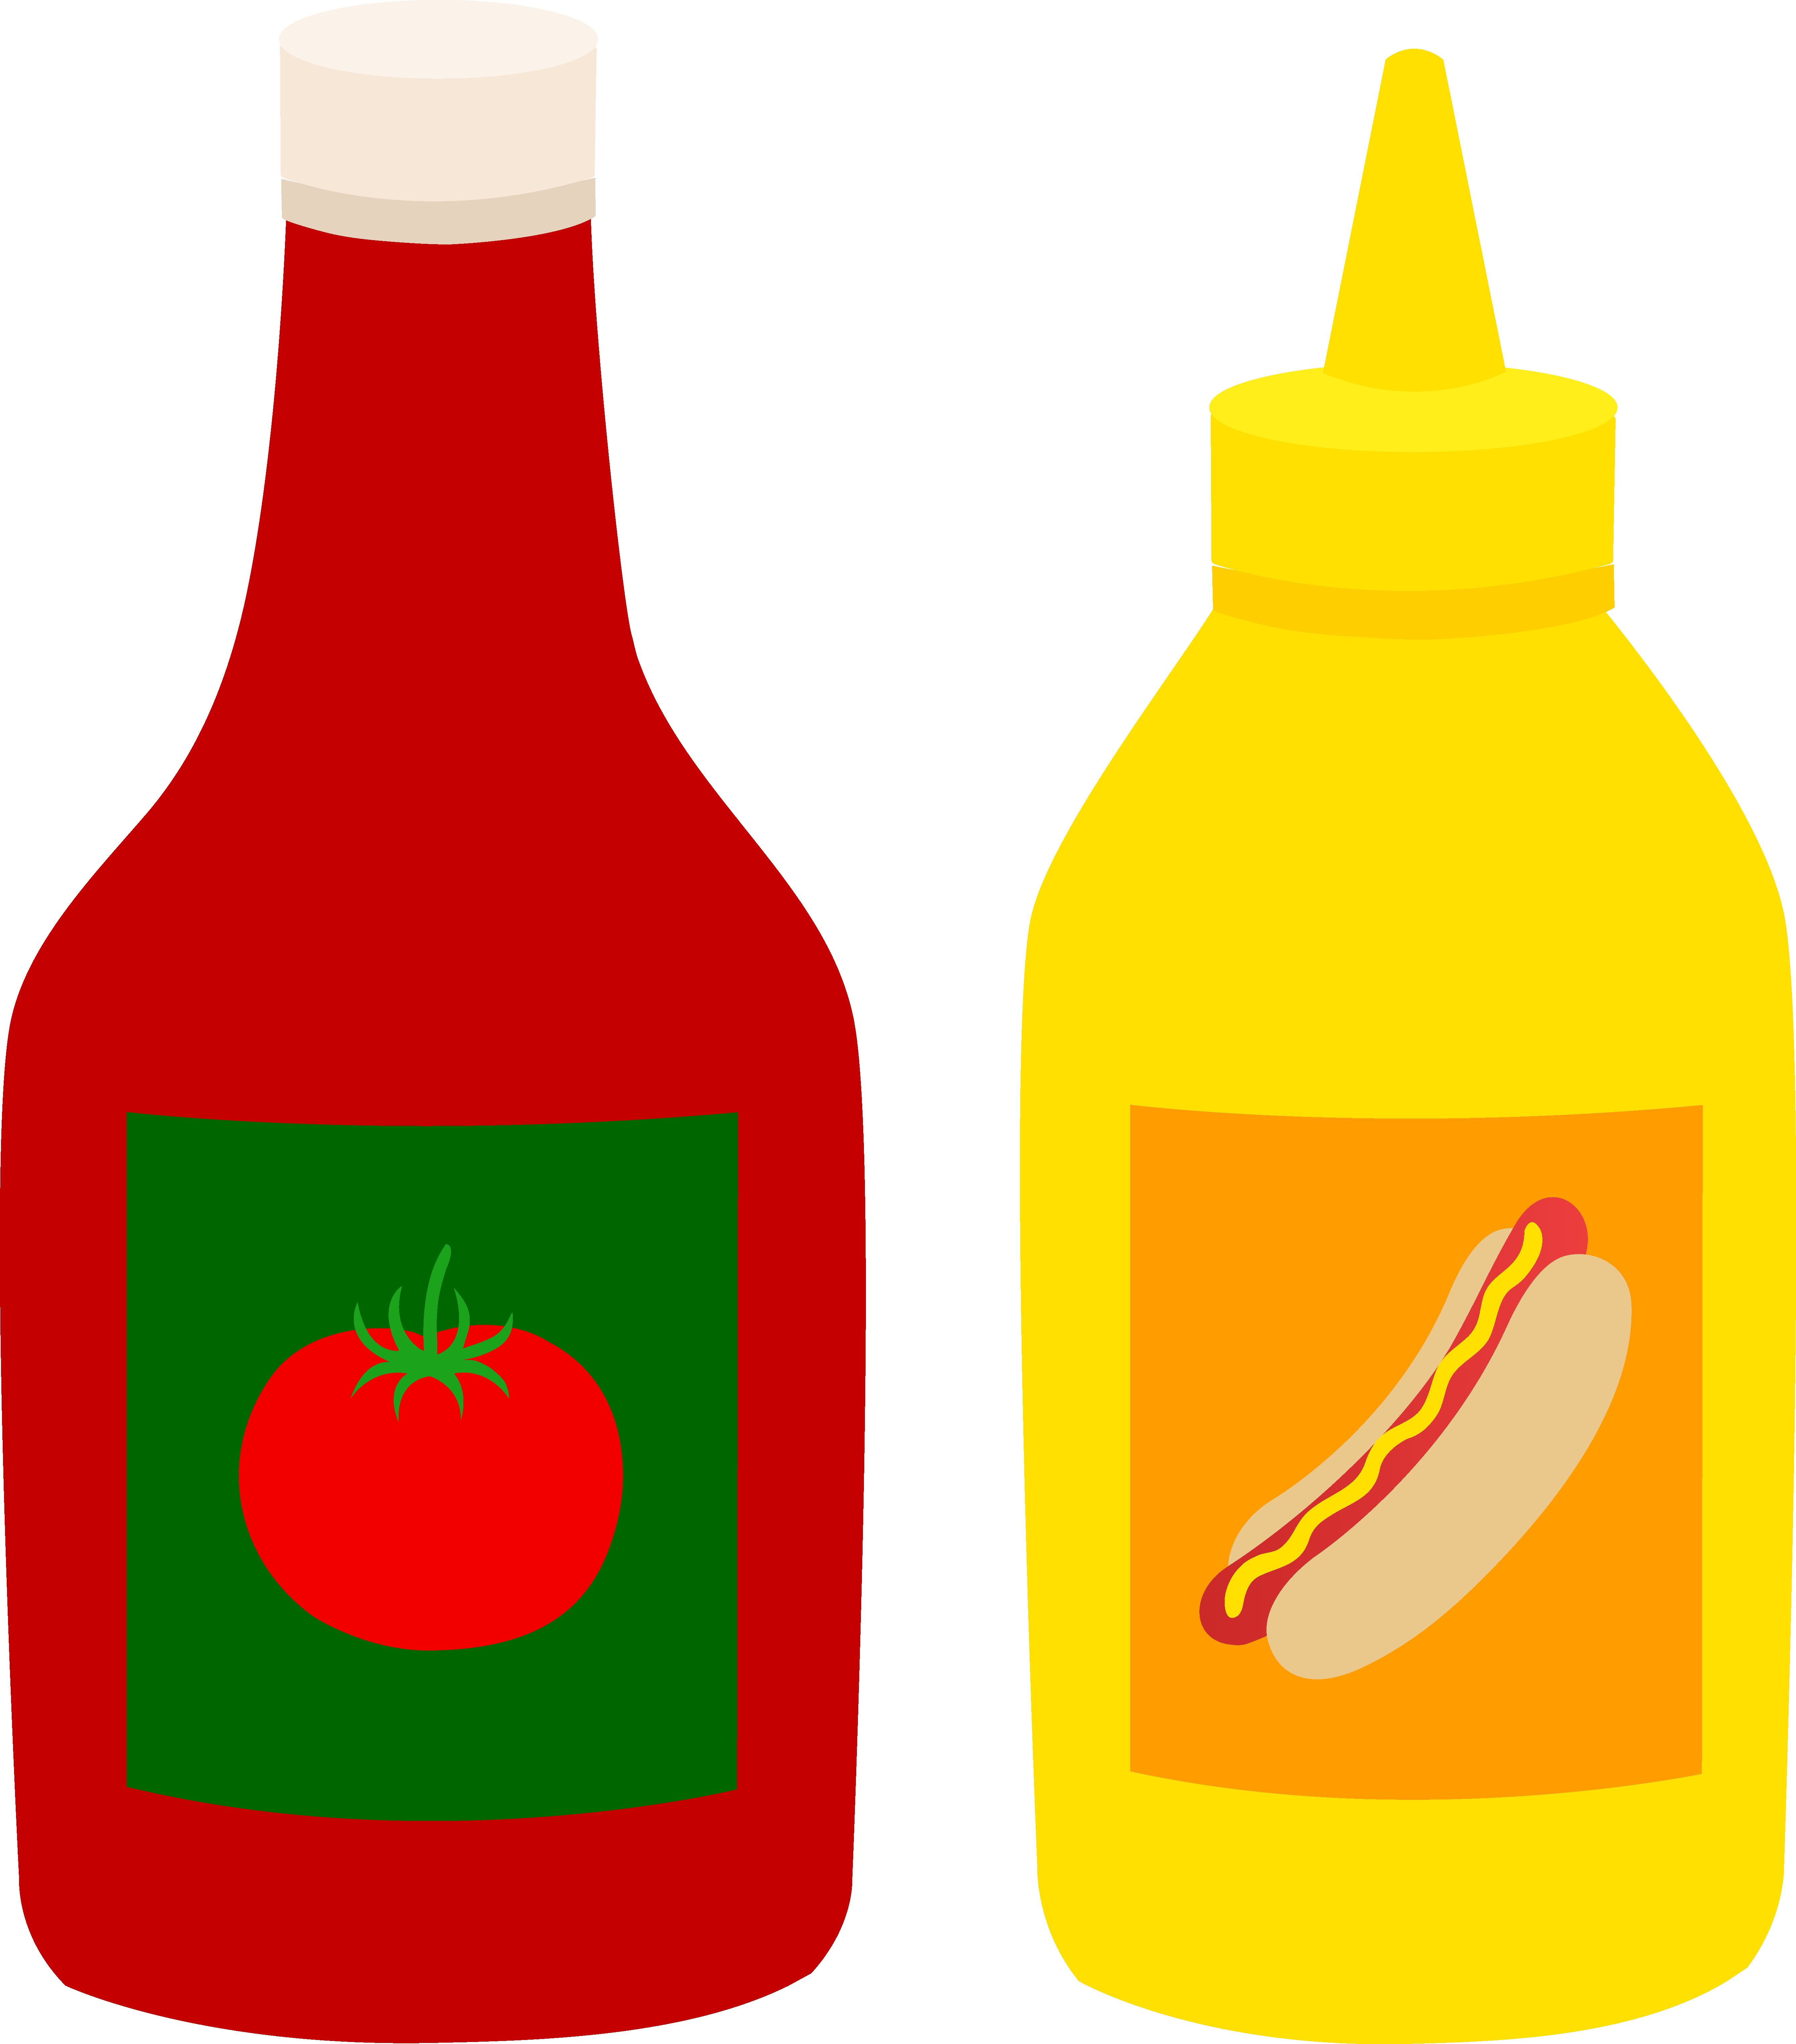 Ketchup and Mustard Bottles P